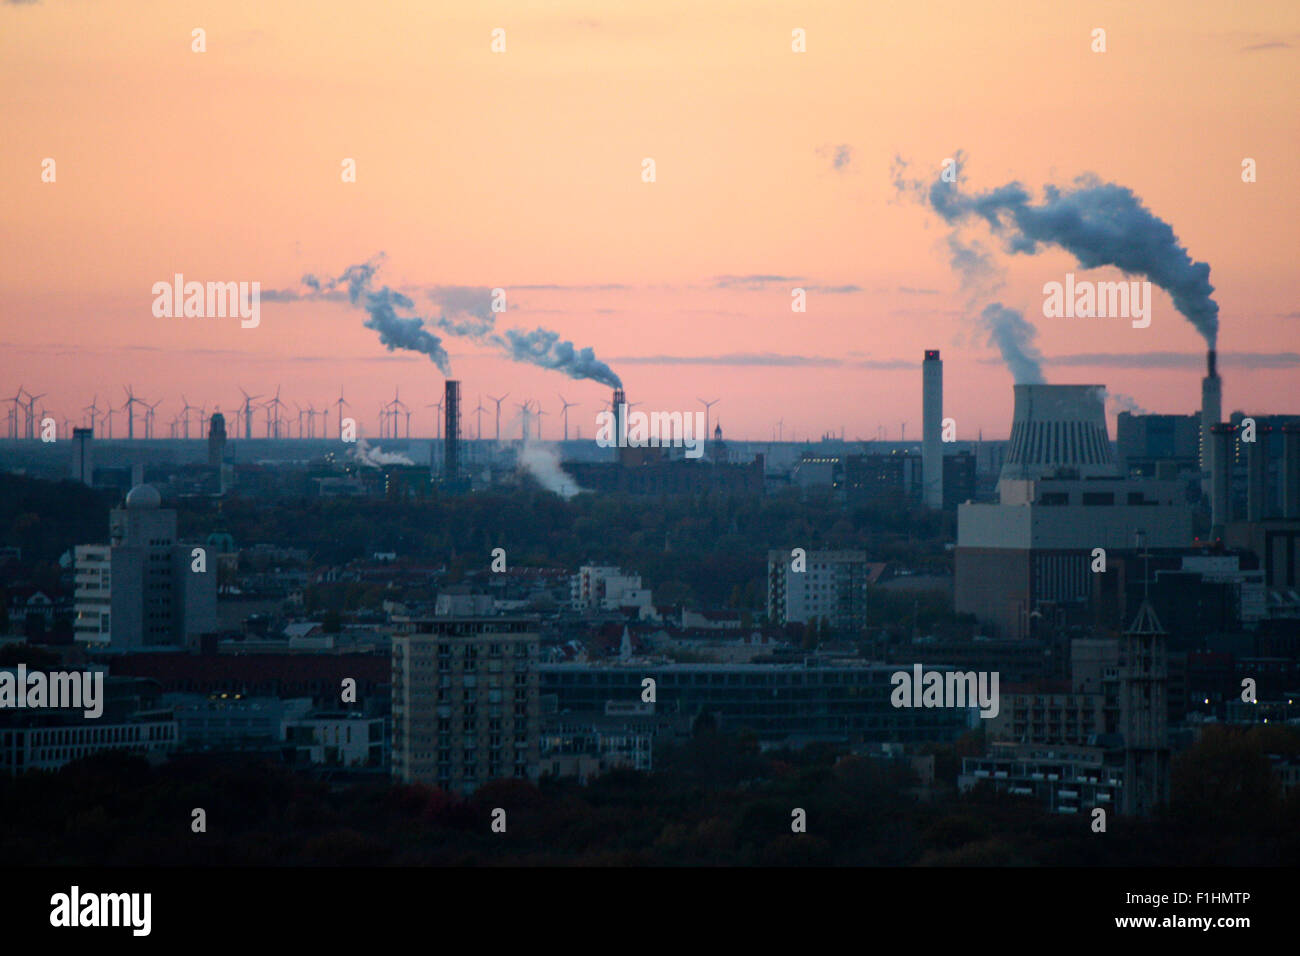 Luftbild: Blick ueber Berlin, im Hintergrund rauchende Schornsteine eines Kraftwerks und dahinter eine Phalanx aus Windkraftraed Foto Stock